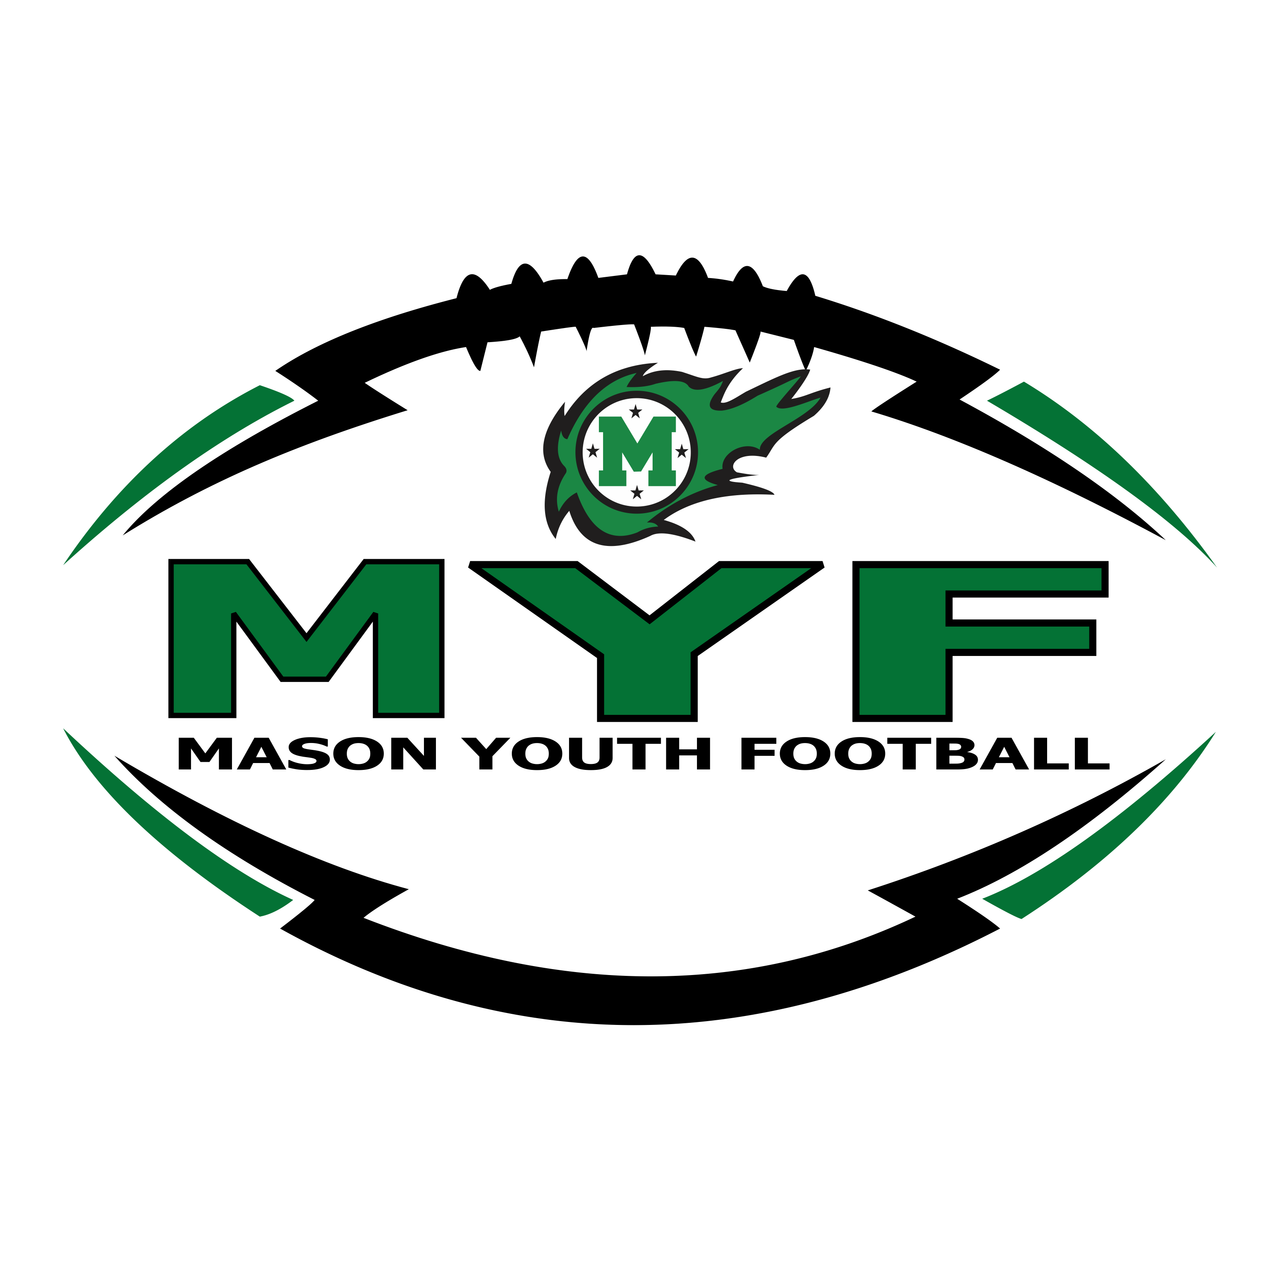 Mason Youth Football